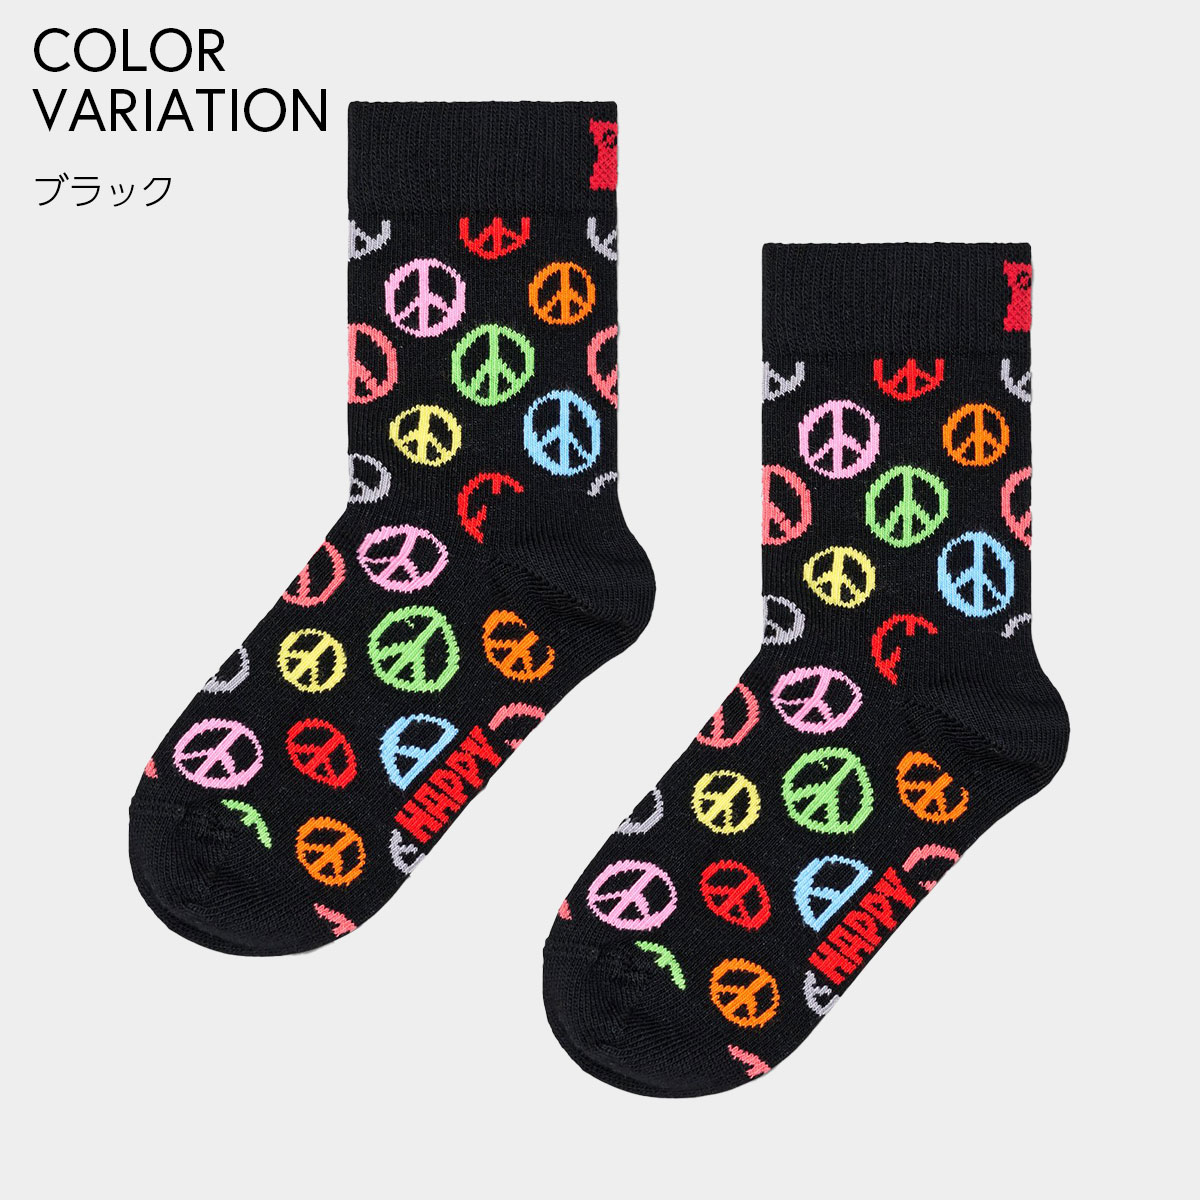 【24SS】Happy Socks ハッピーソックス Kids Peace ( ピース )  子供 クルー丈 綿混 ソックス KIDS ジュニア キッズ 12240020